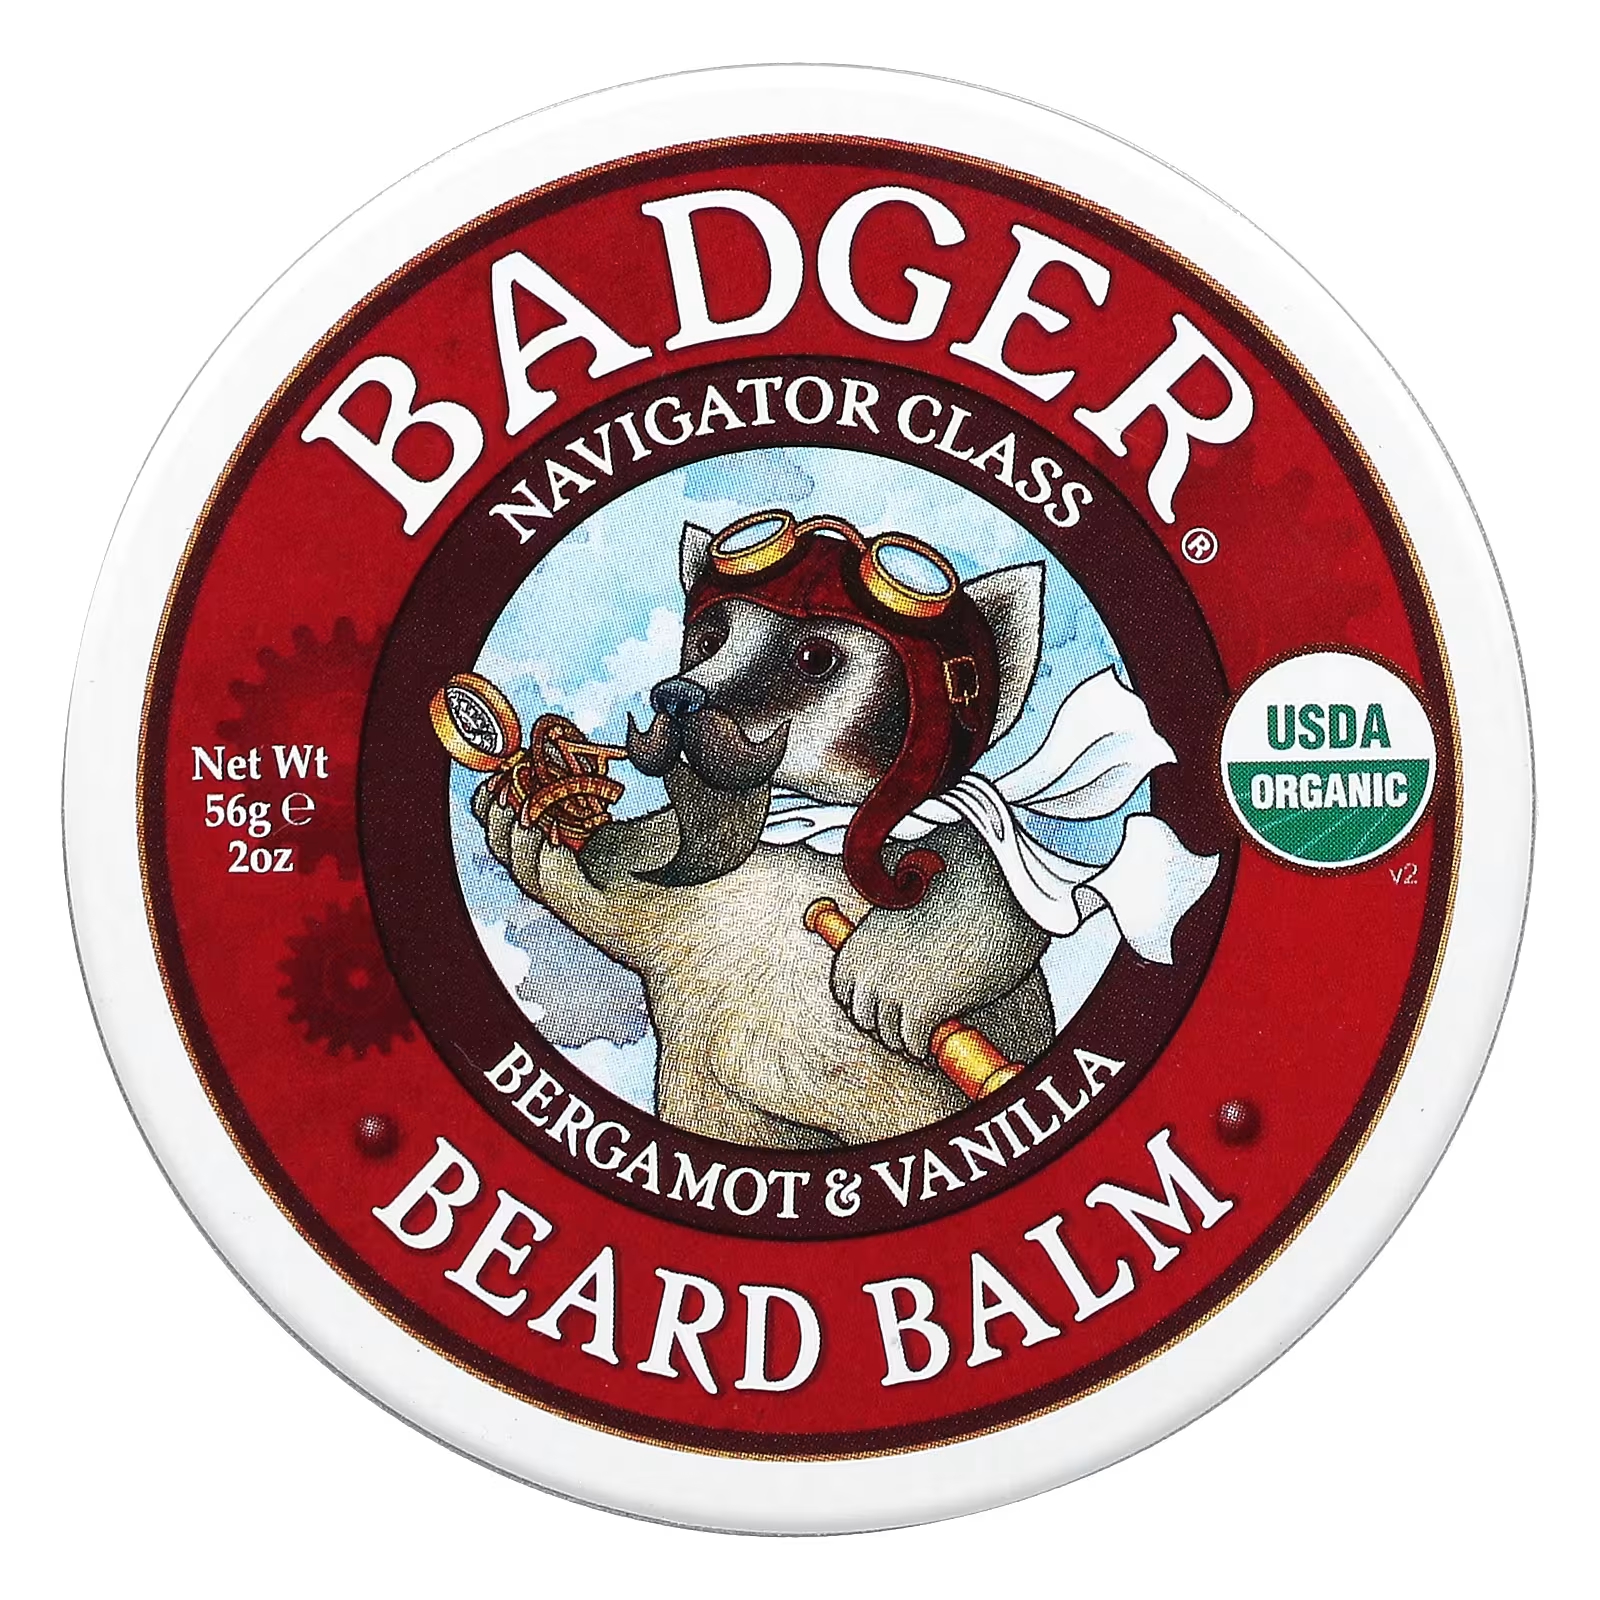 Бальзам для бороды Badger Company, 56 г цена и фото